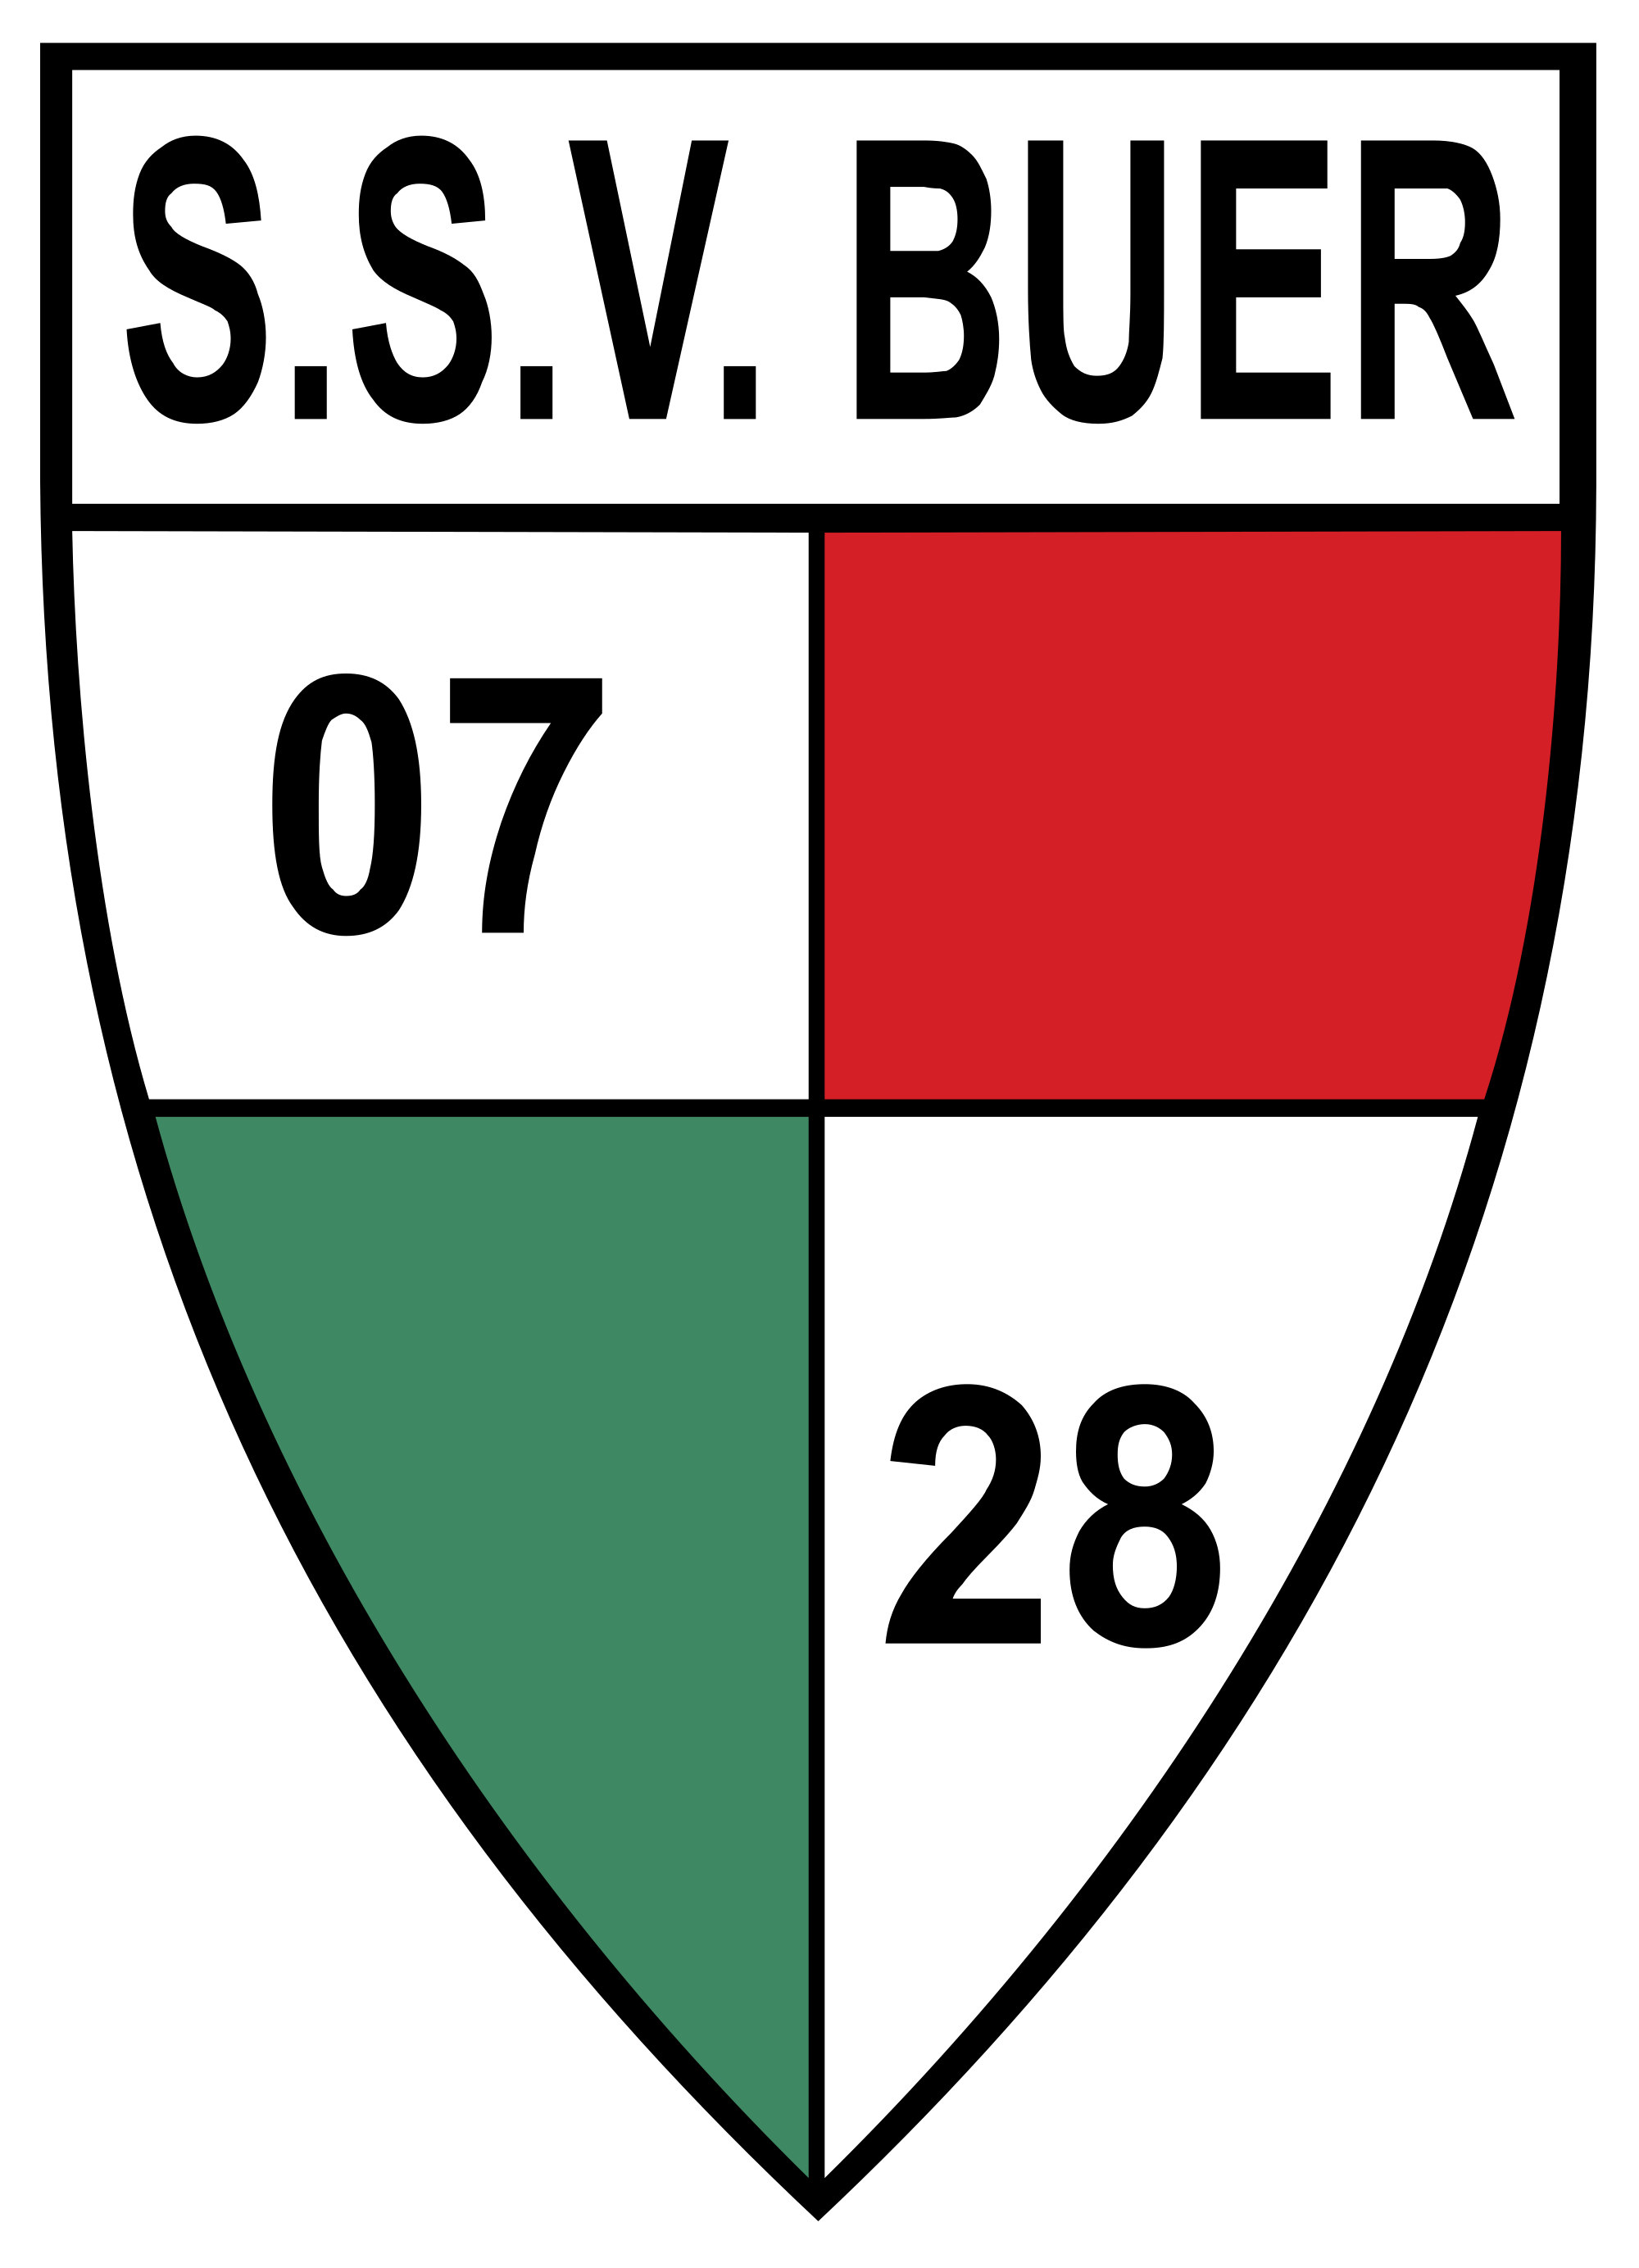 Wappen SSV Buer 07/28 III  35842